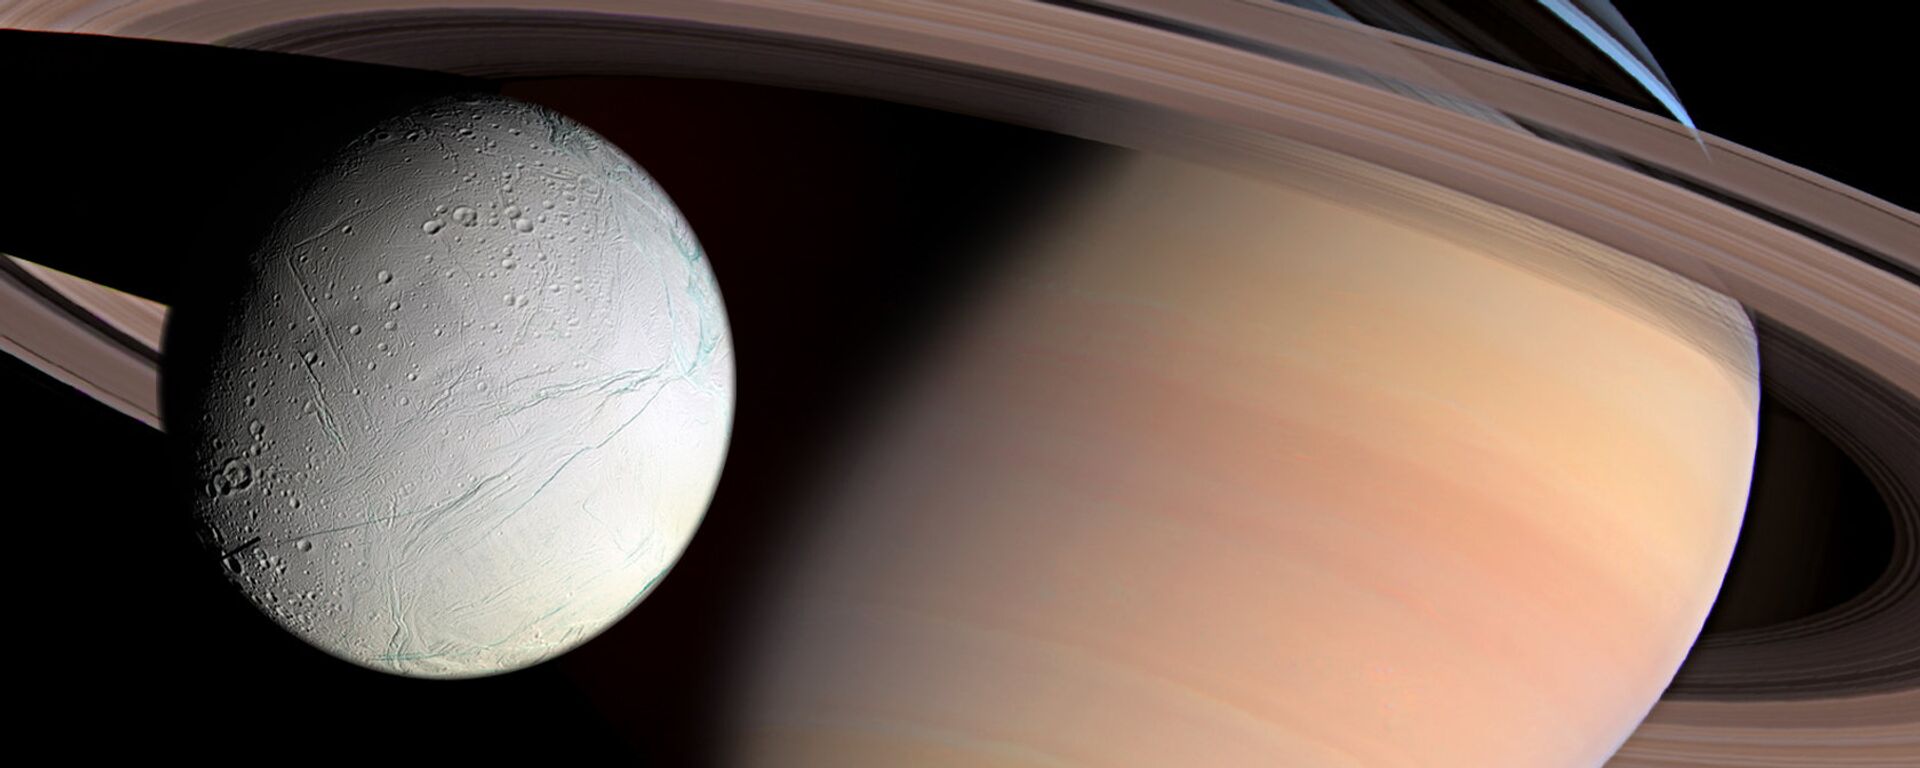 Saturn and Enceladus  - Sputnik International, 1920, 03.10.2019